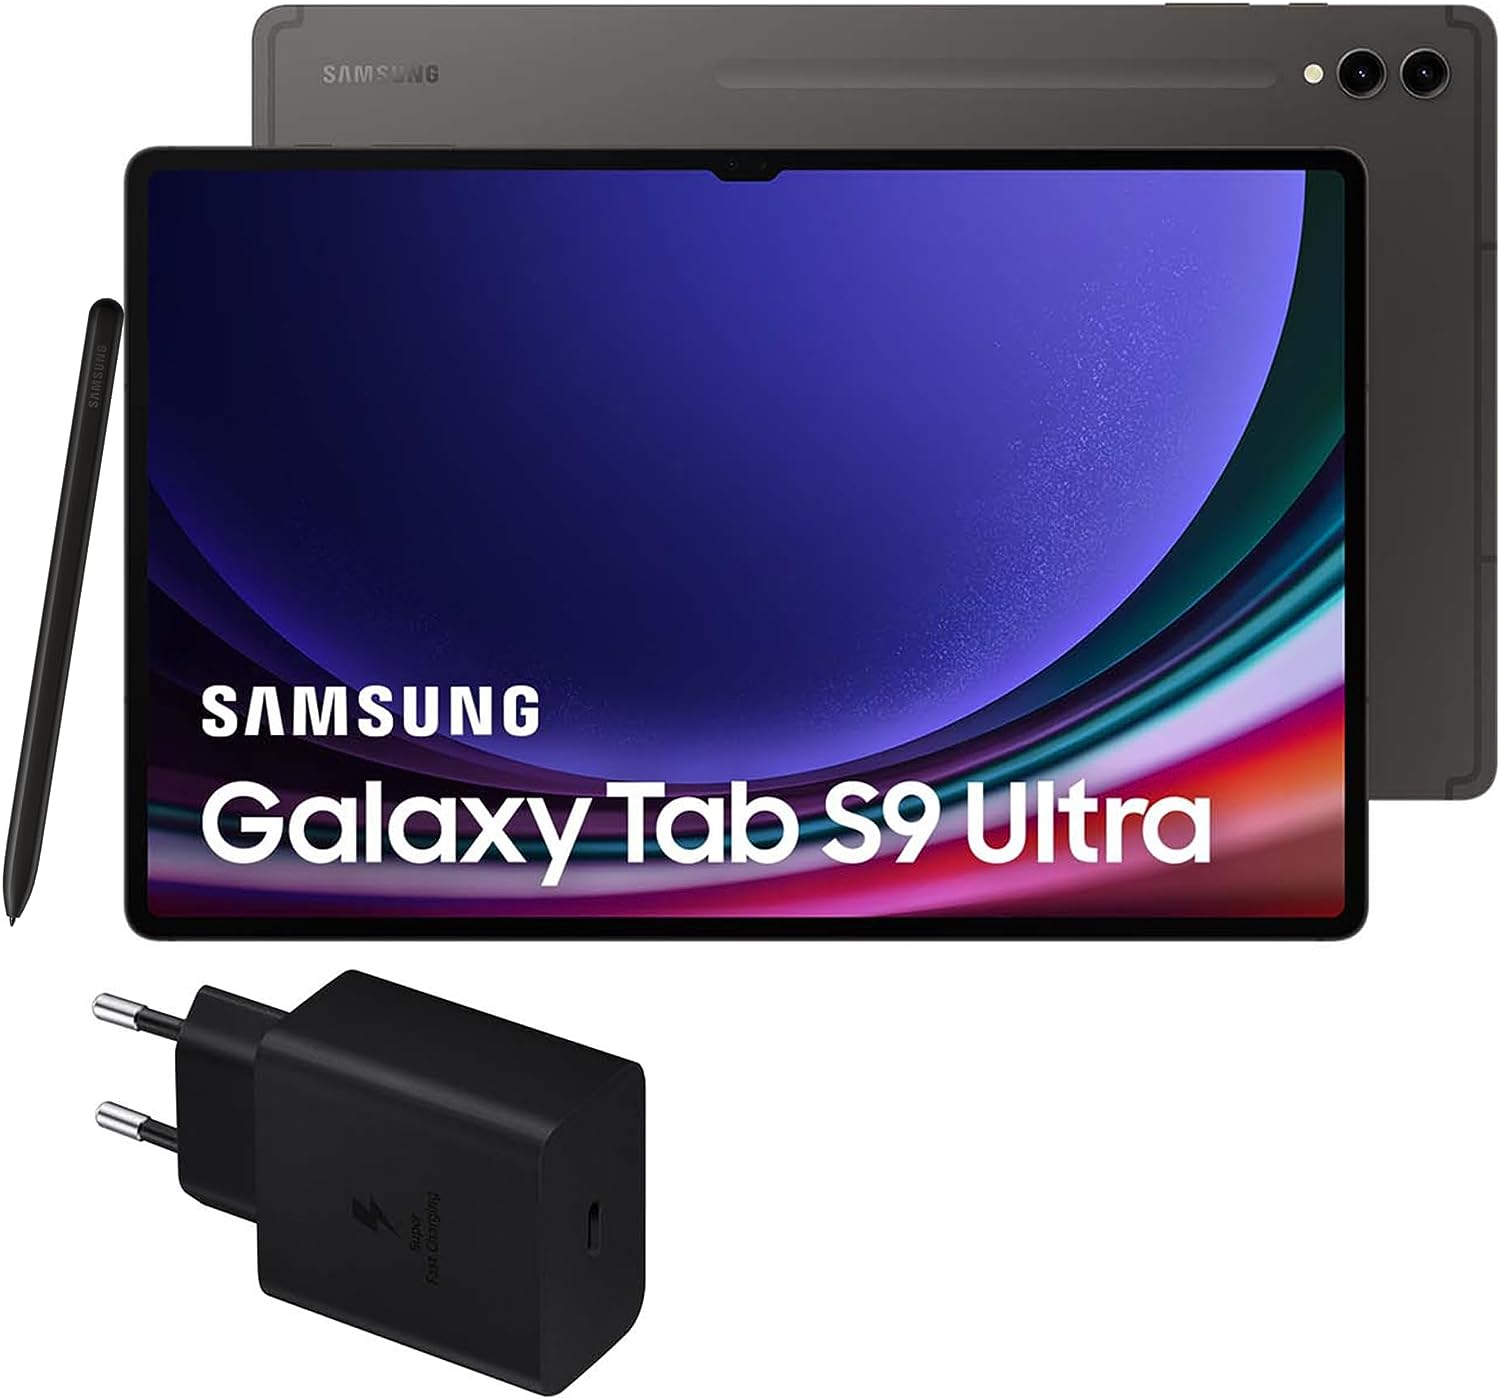 Samsung Galaxy Tab S9 Ultra vs Samsung Galaxy Tab S9 vs Samsung Galaxy Tab S9+